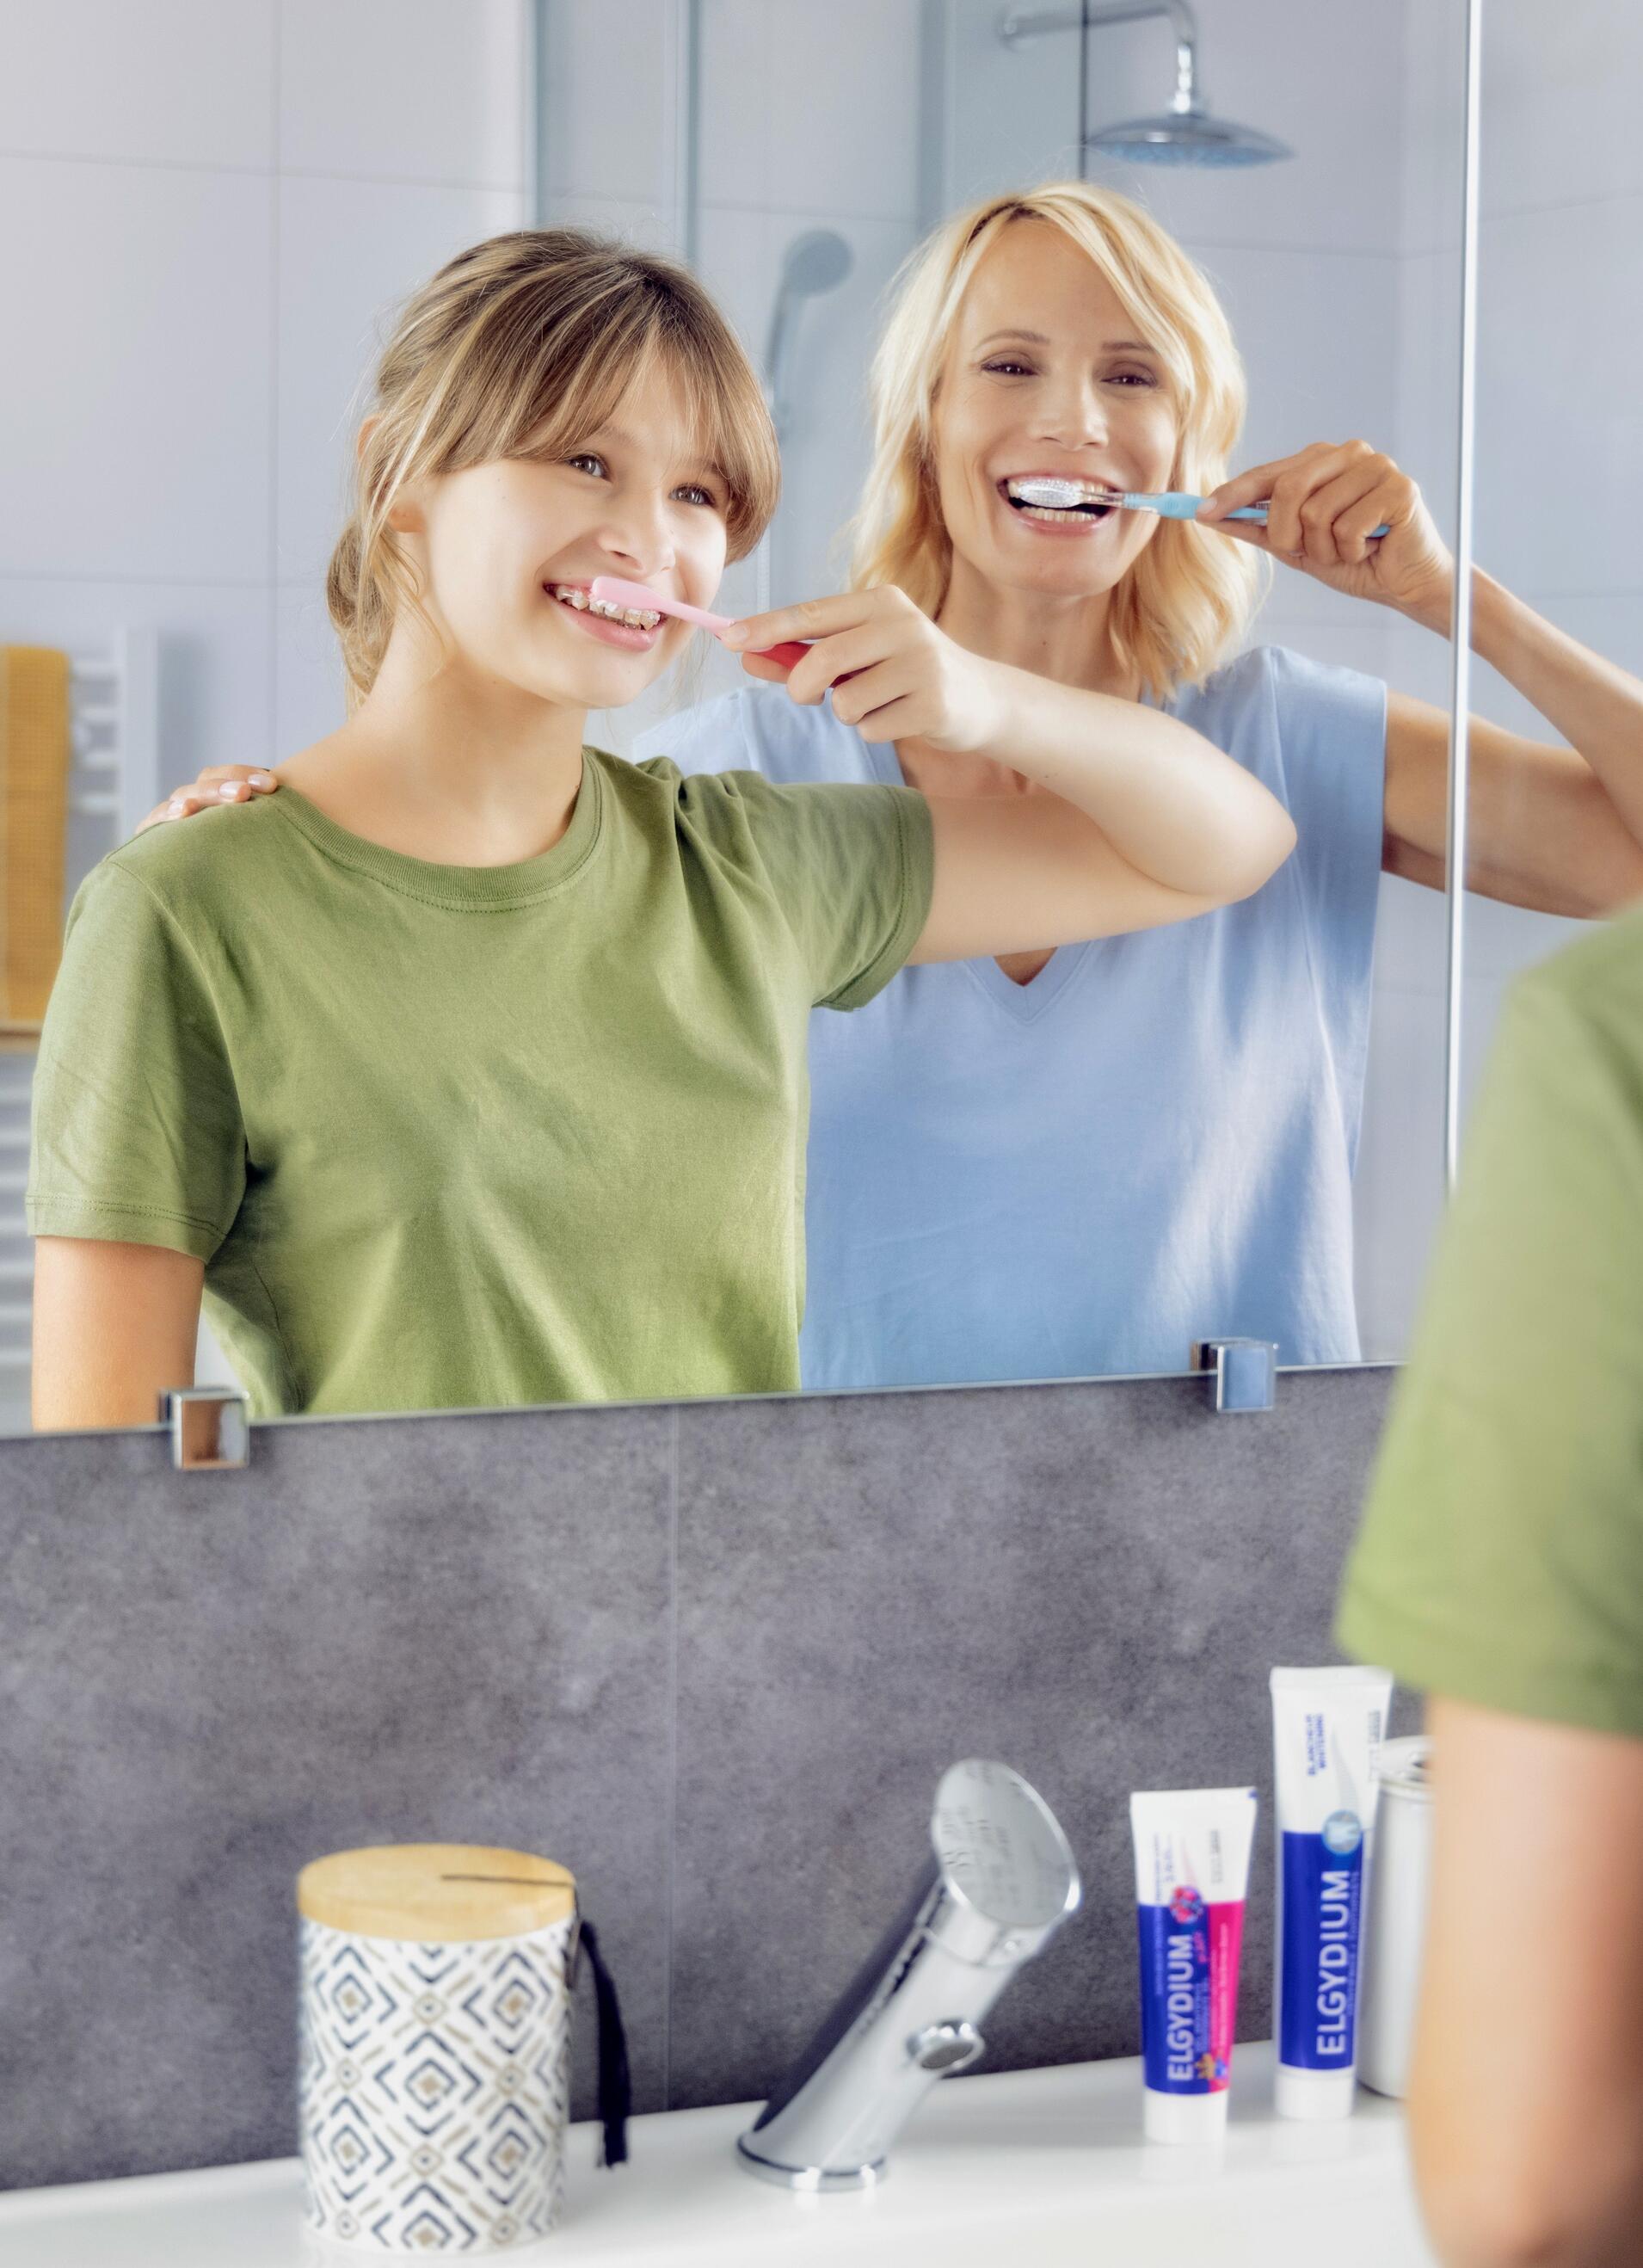 PISAM - #ConseilSanté TRUCS ET ASTUCES pour une haleine fraîche Pour une haleine  fraîche, il suffit d'adopter de bonnes pratiques d'hygiène buccodentaire :  ▫Se brosser les dents et la langue ▫Passer la